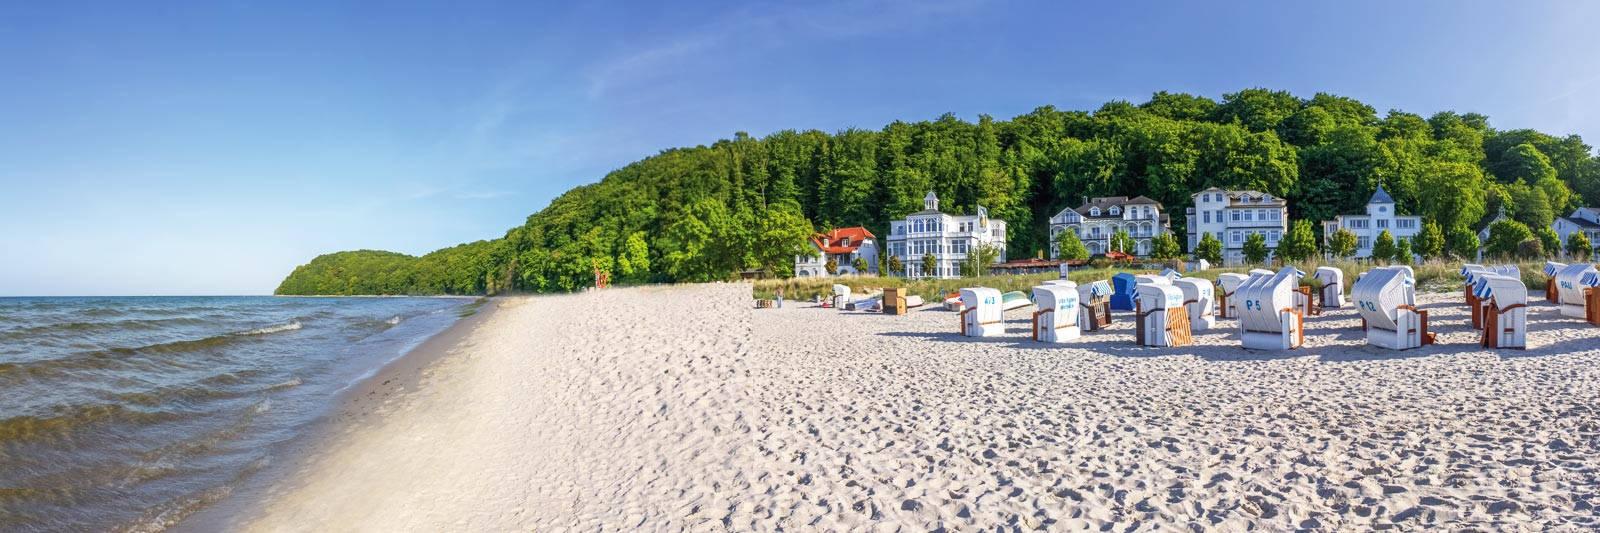 48 Ferienwohnungen und Ferienhäuser in Fleeth - tourist-online.de